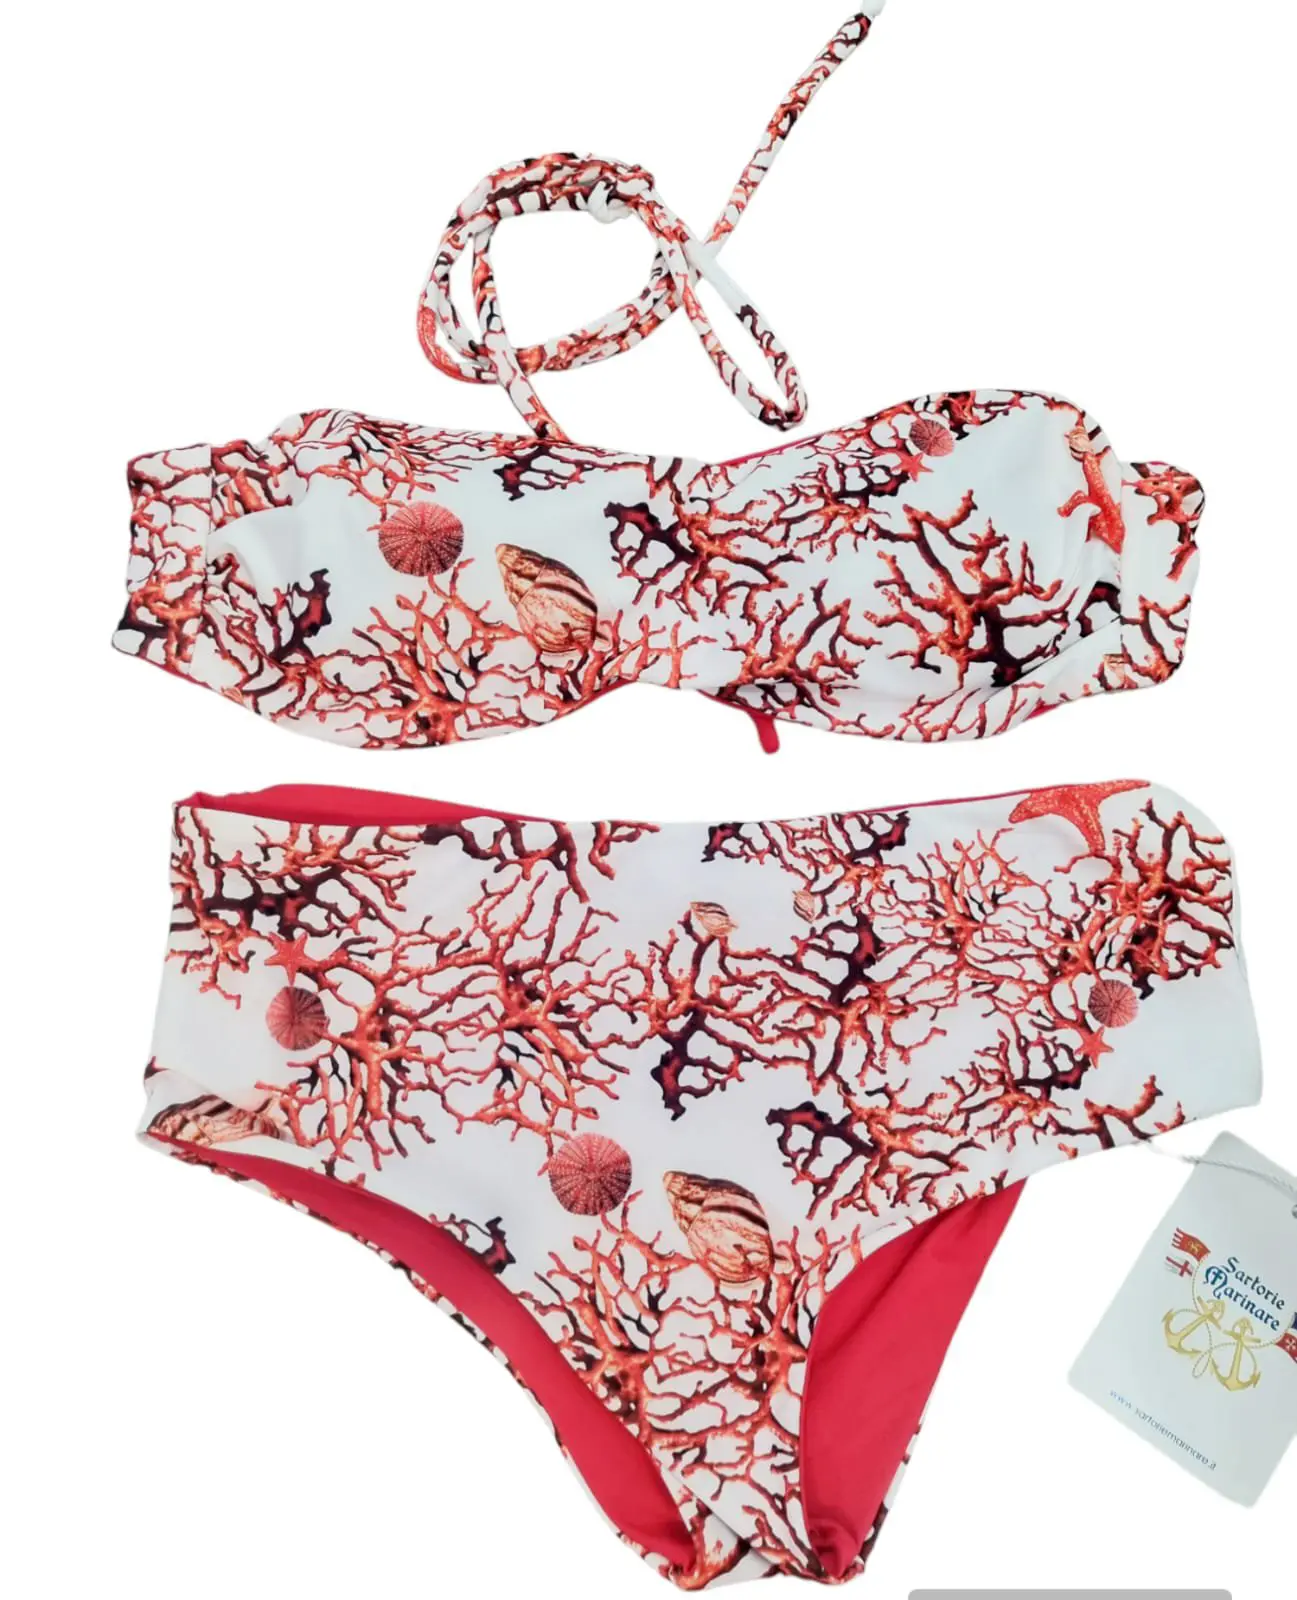 Bikini bandeau de doble faz con posibilidad de insertar cordones, braguita culotte con estampado coral y rojo. Talla S.